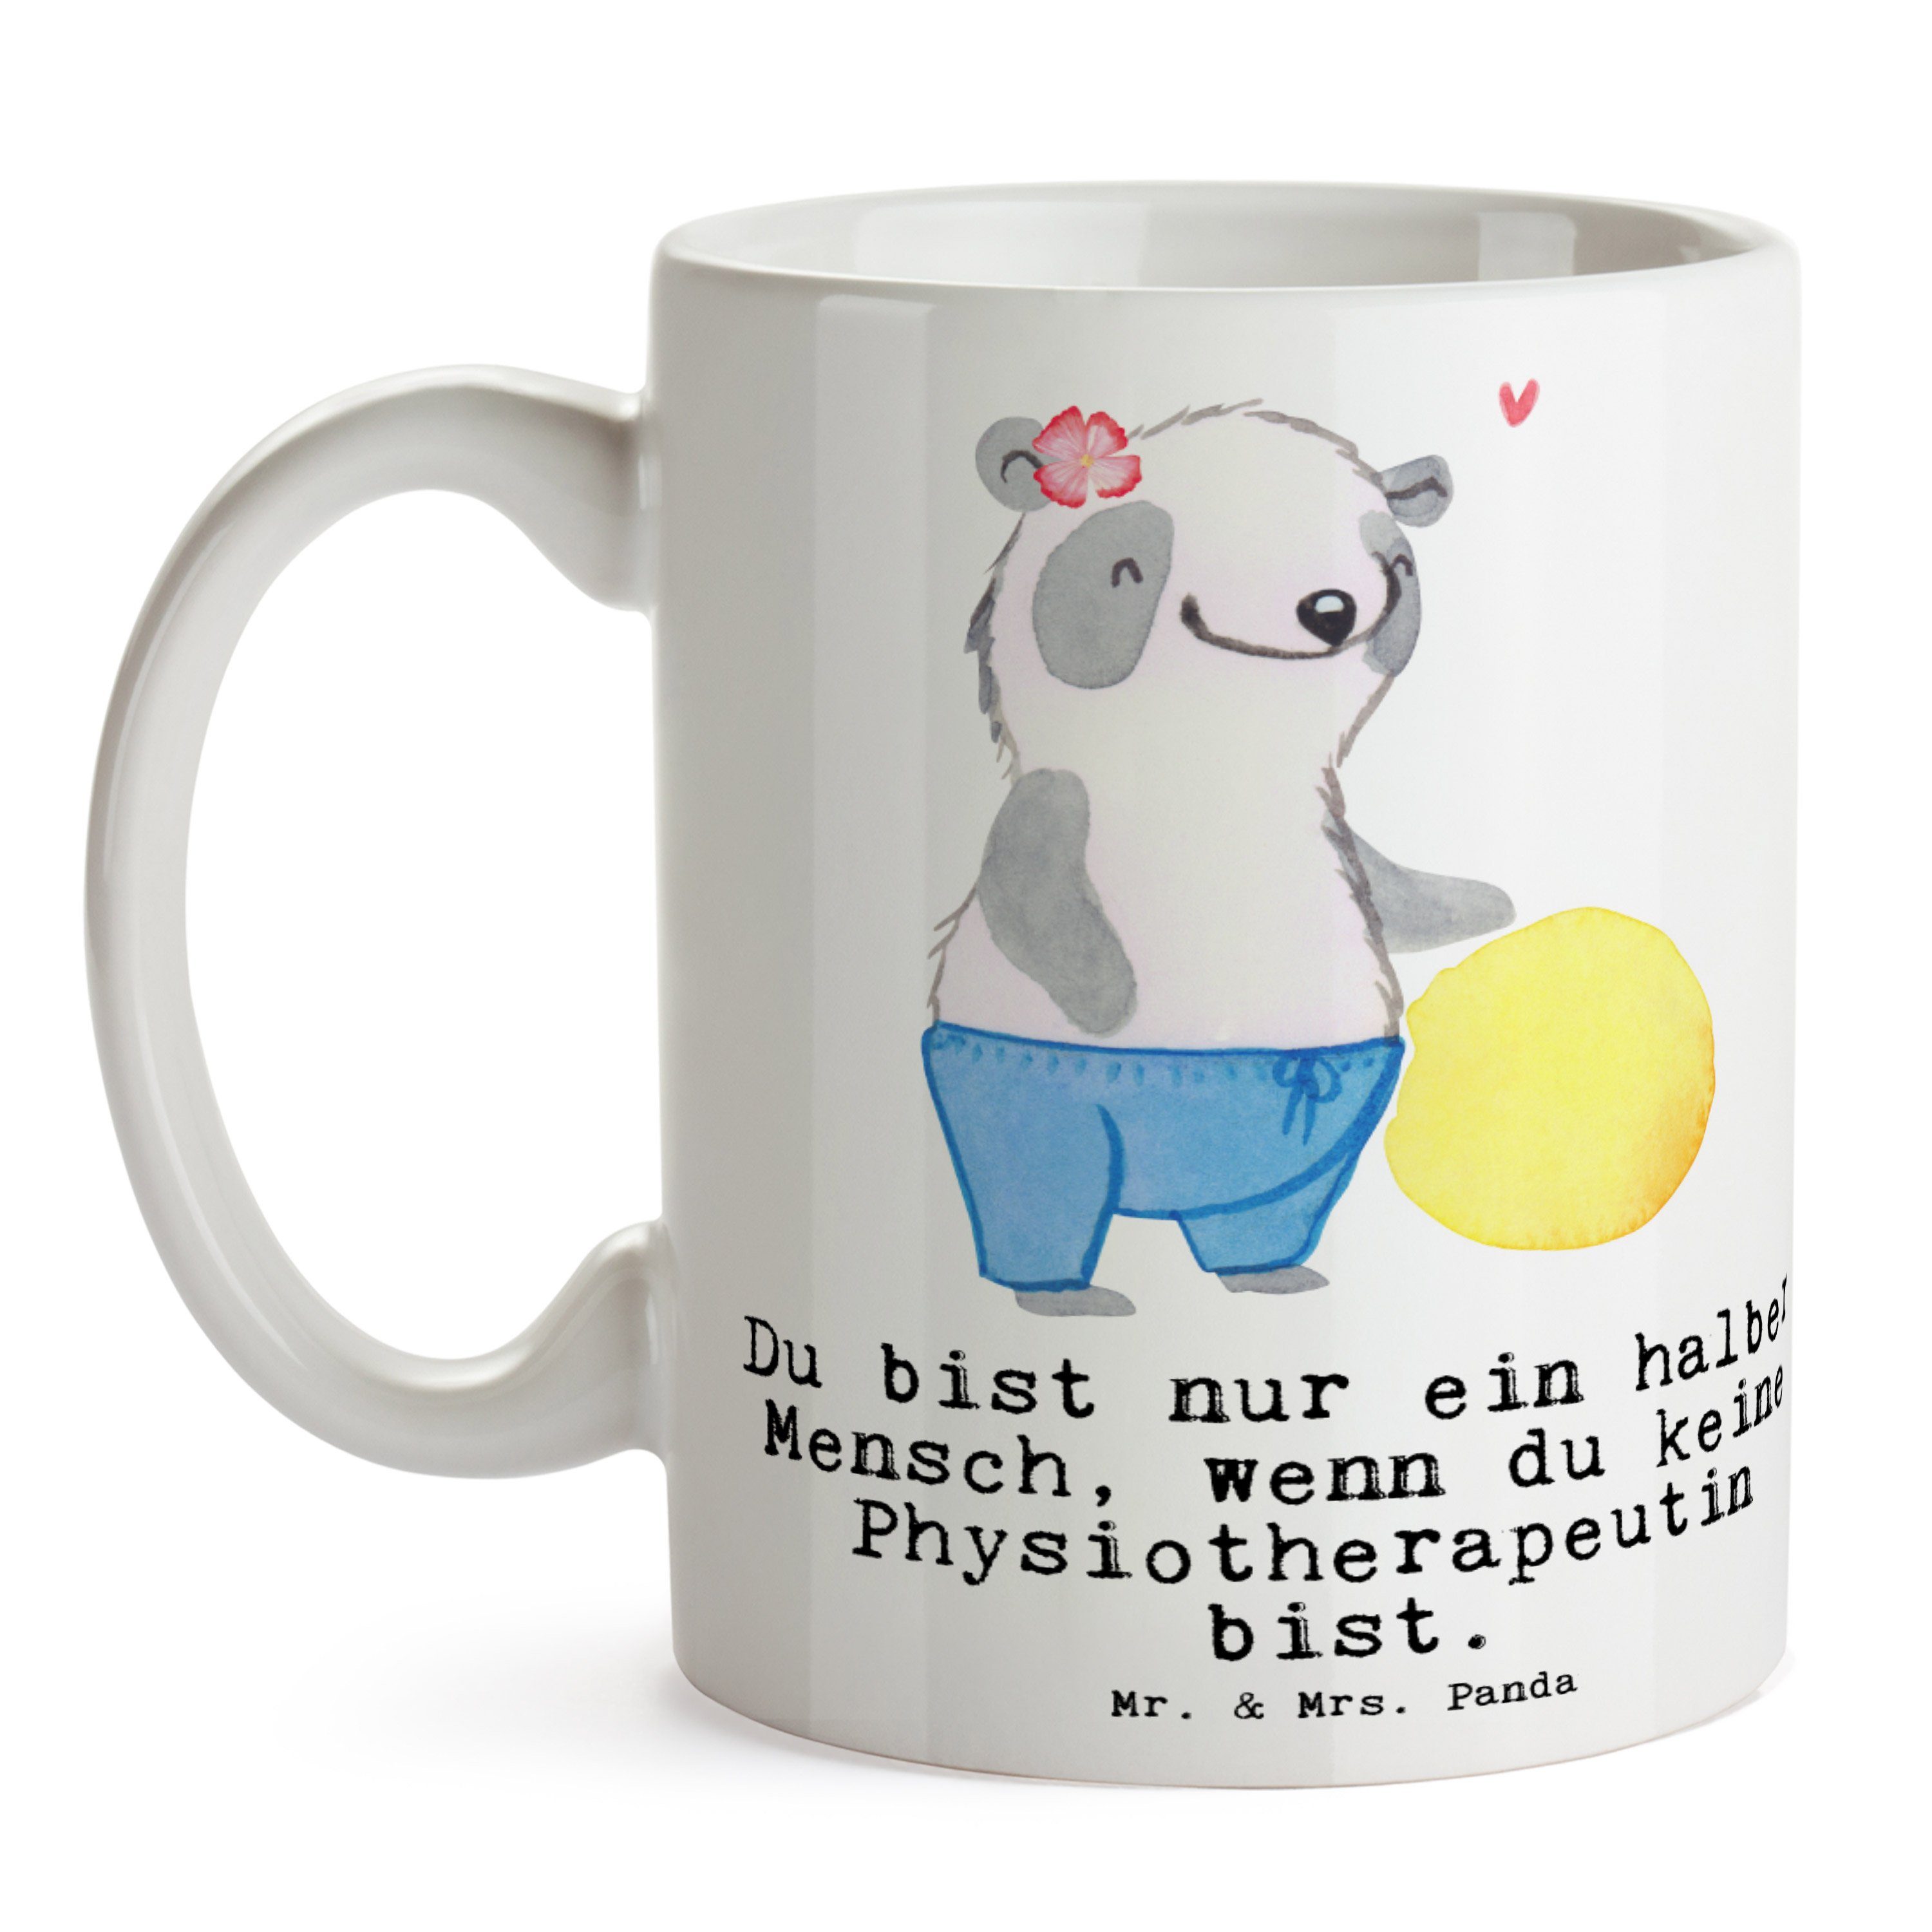 Mr. & Mrs. Panda Tasse Geschenk, - Herz - Rente, Kaffeebecher, Weiß mit Keramik Mi, Physiotherapeutin